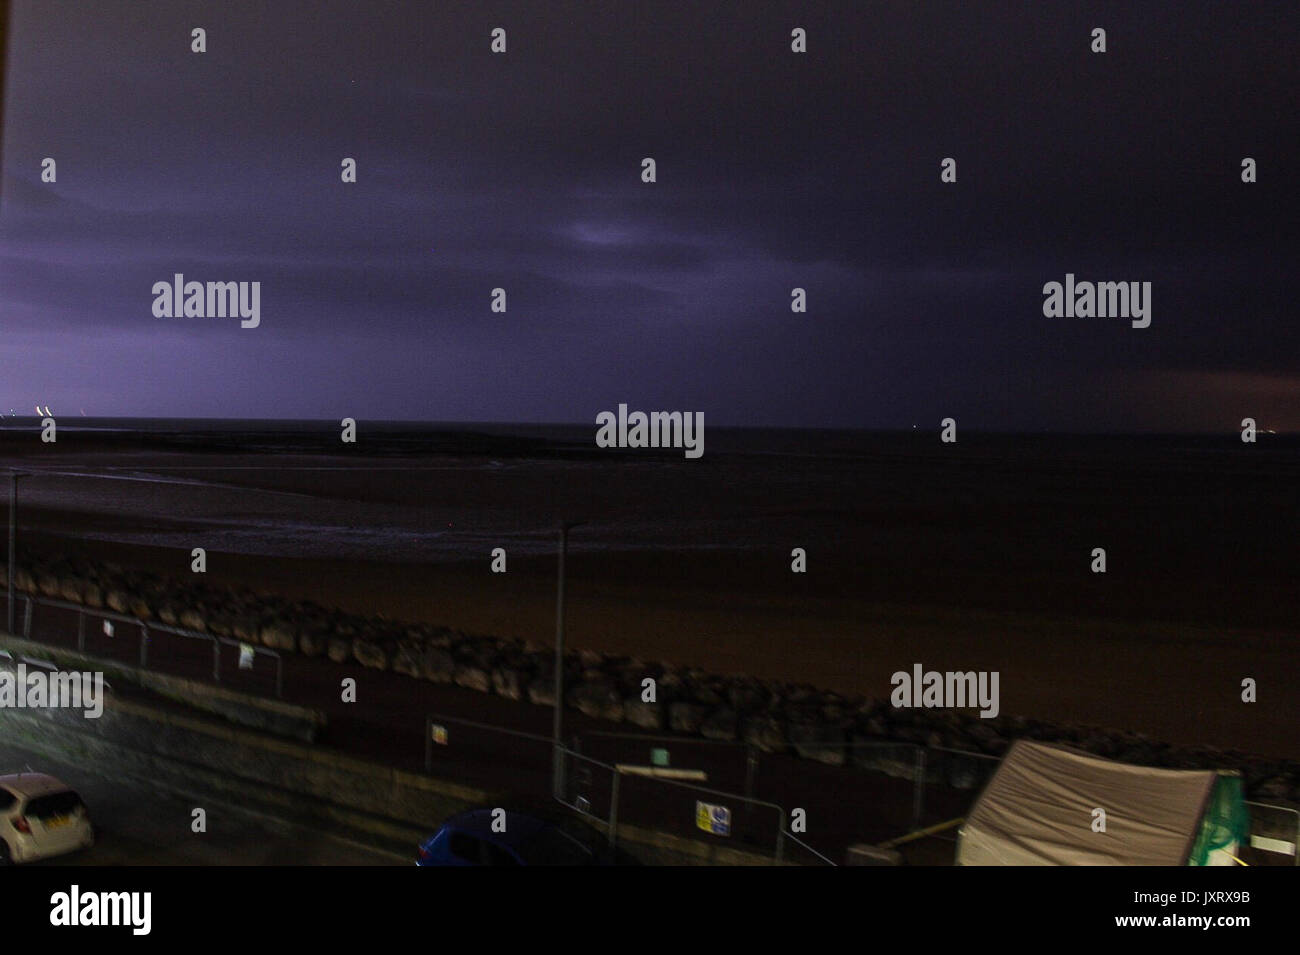 Morecambe, Lancashire, UK. 17th August, 2017. Sheet lightning illuminates Morecambe Bay this morning Credit: David Billinge/Alamy Live News Stock Photo